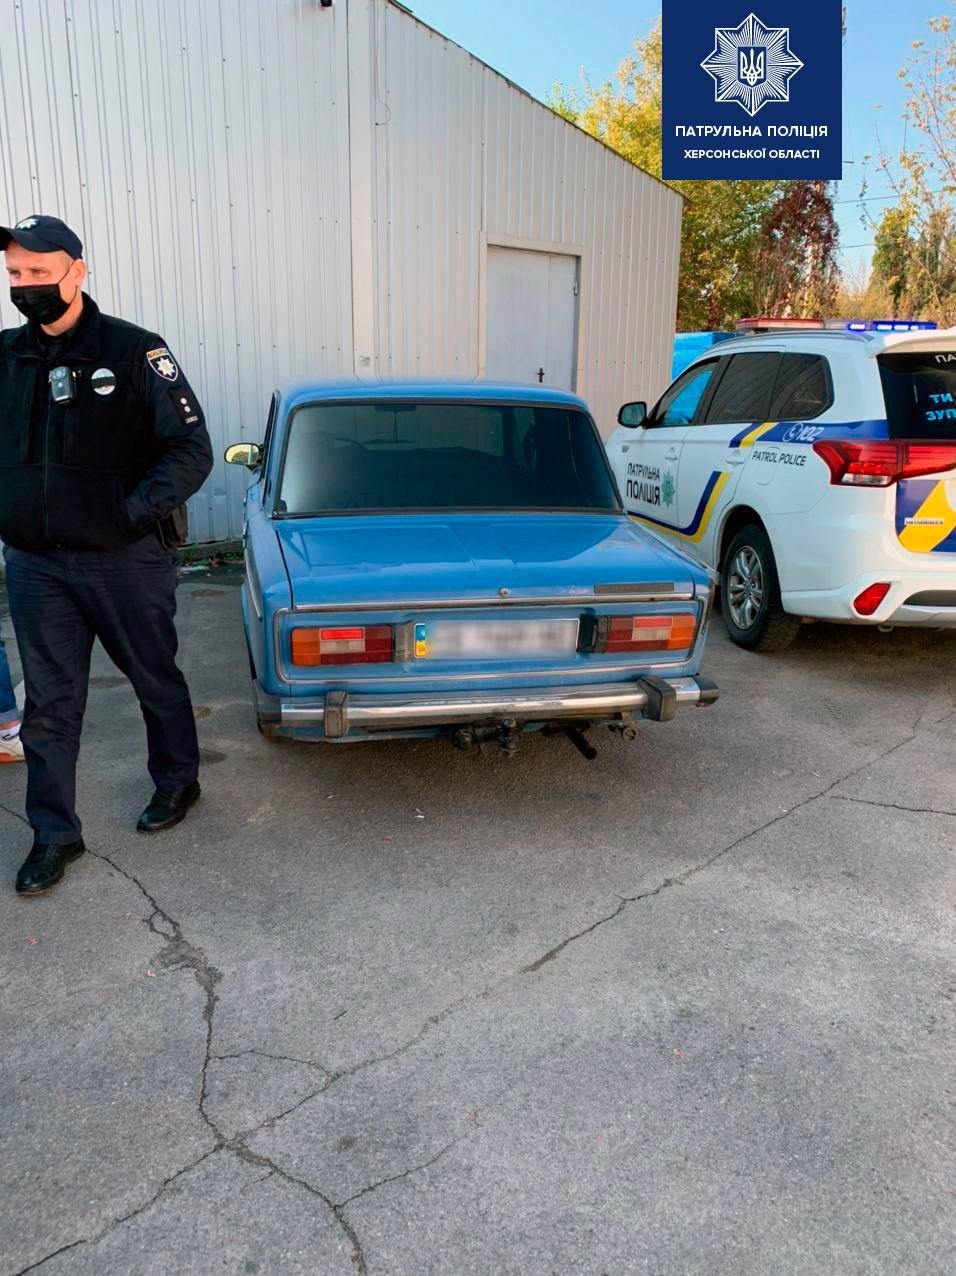 Полицейские разыскали автомобиль, которым незаконно завладели в прошлом месяце